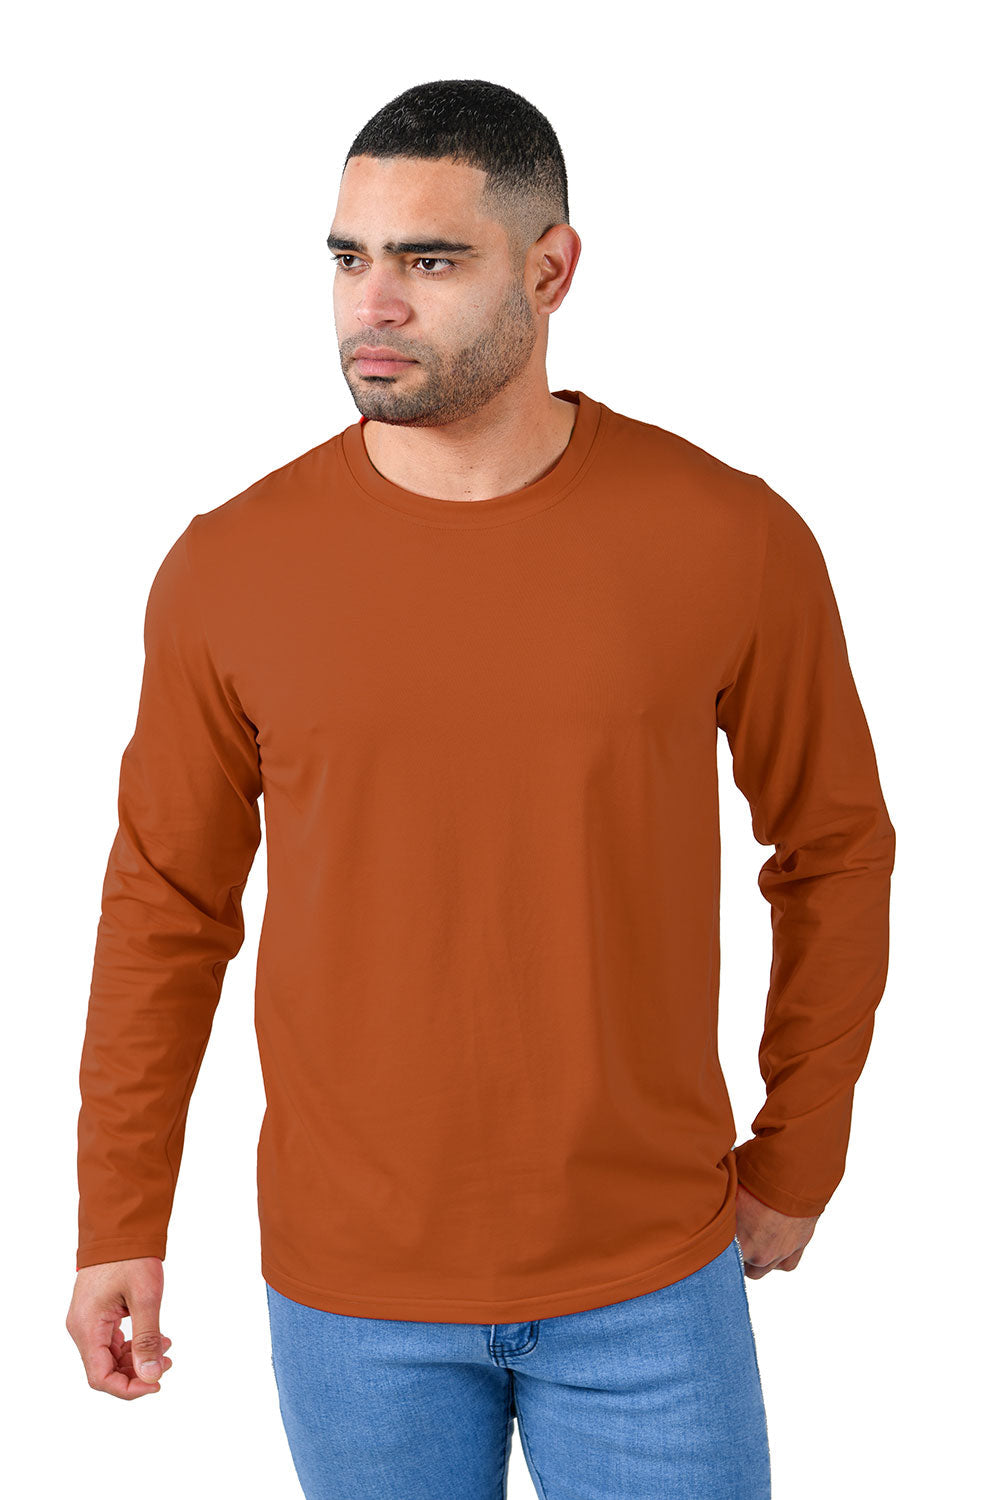 Barabas Wholesale Men's Solid Color Crew Neck Sweatshirts LV127 rust